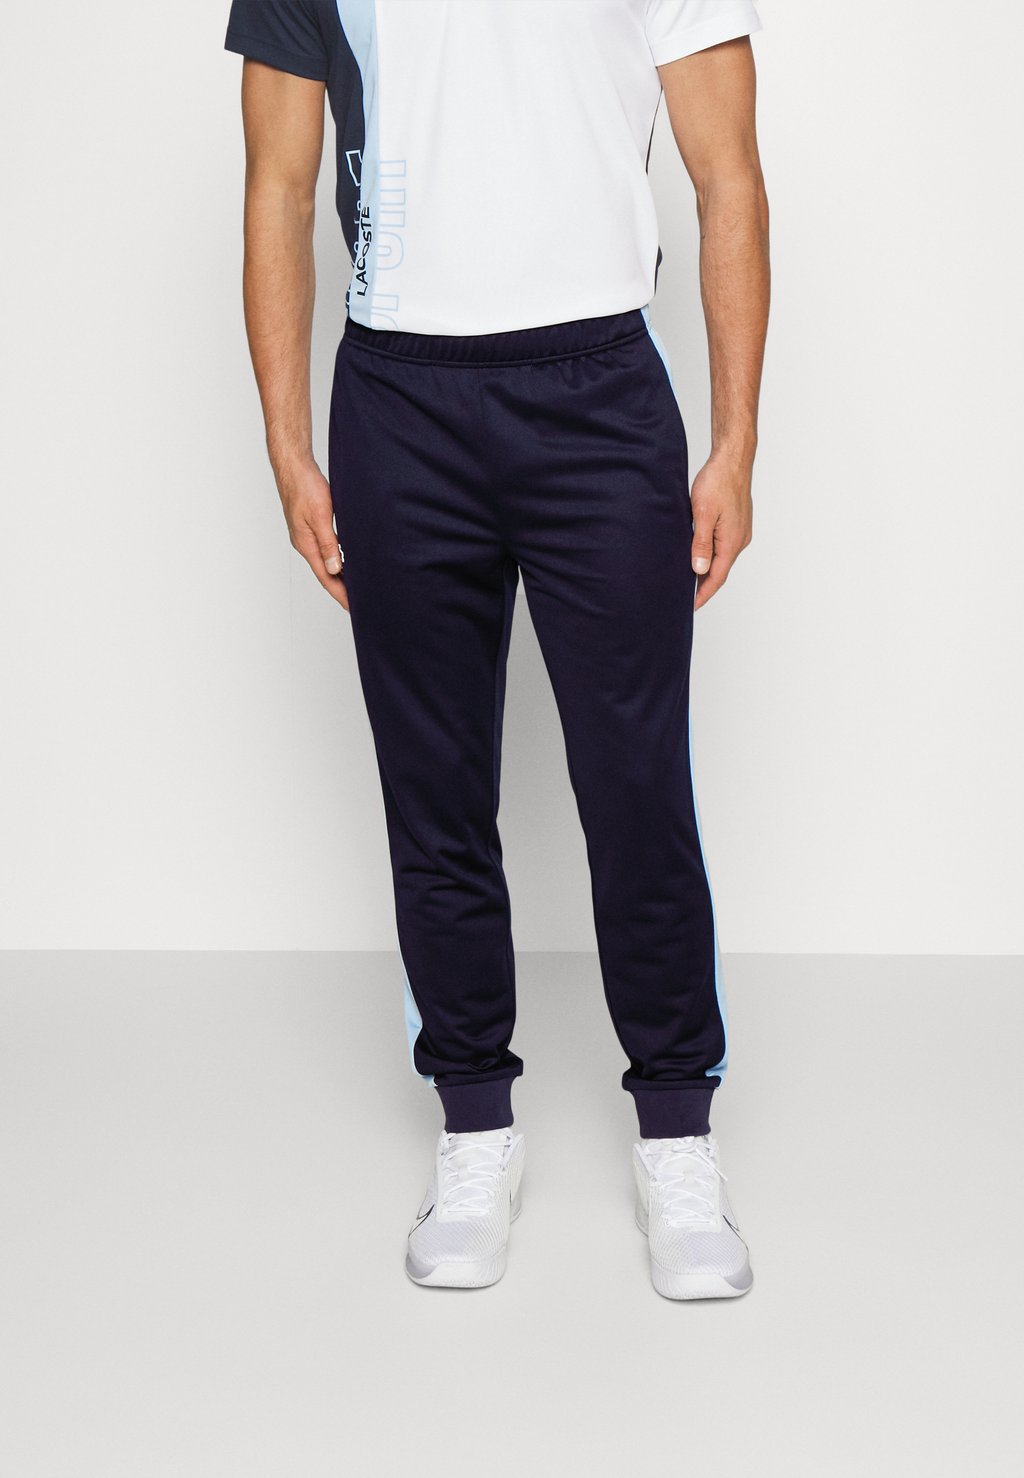 Спортивные брюки Tennis Pant Lacoste, цвет navy blue/overview спортивные брюки tennis pant lacoste цвет sinople navy blue